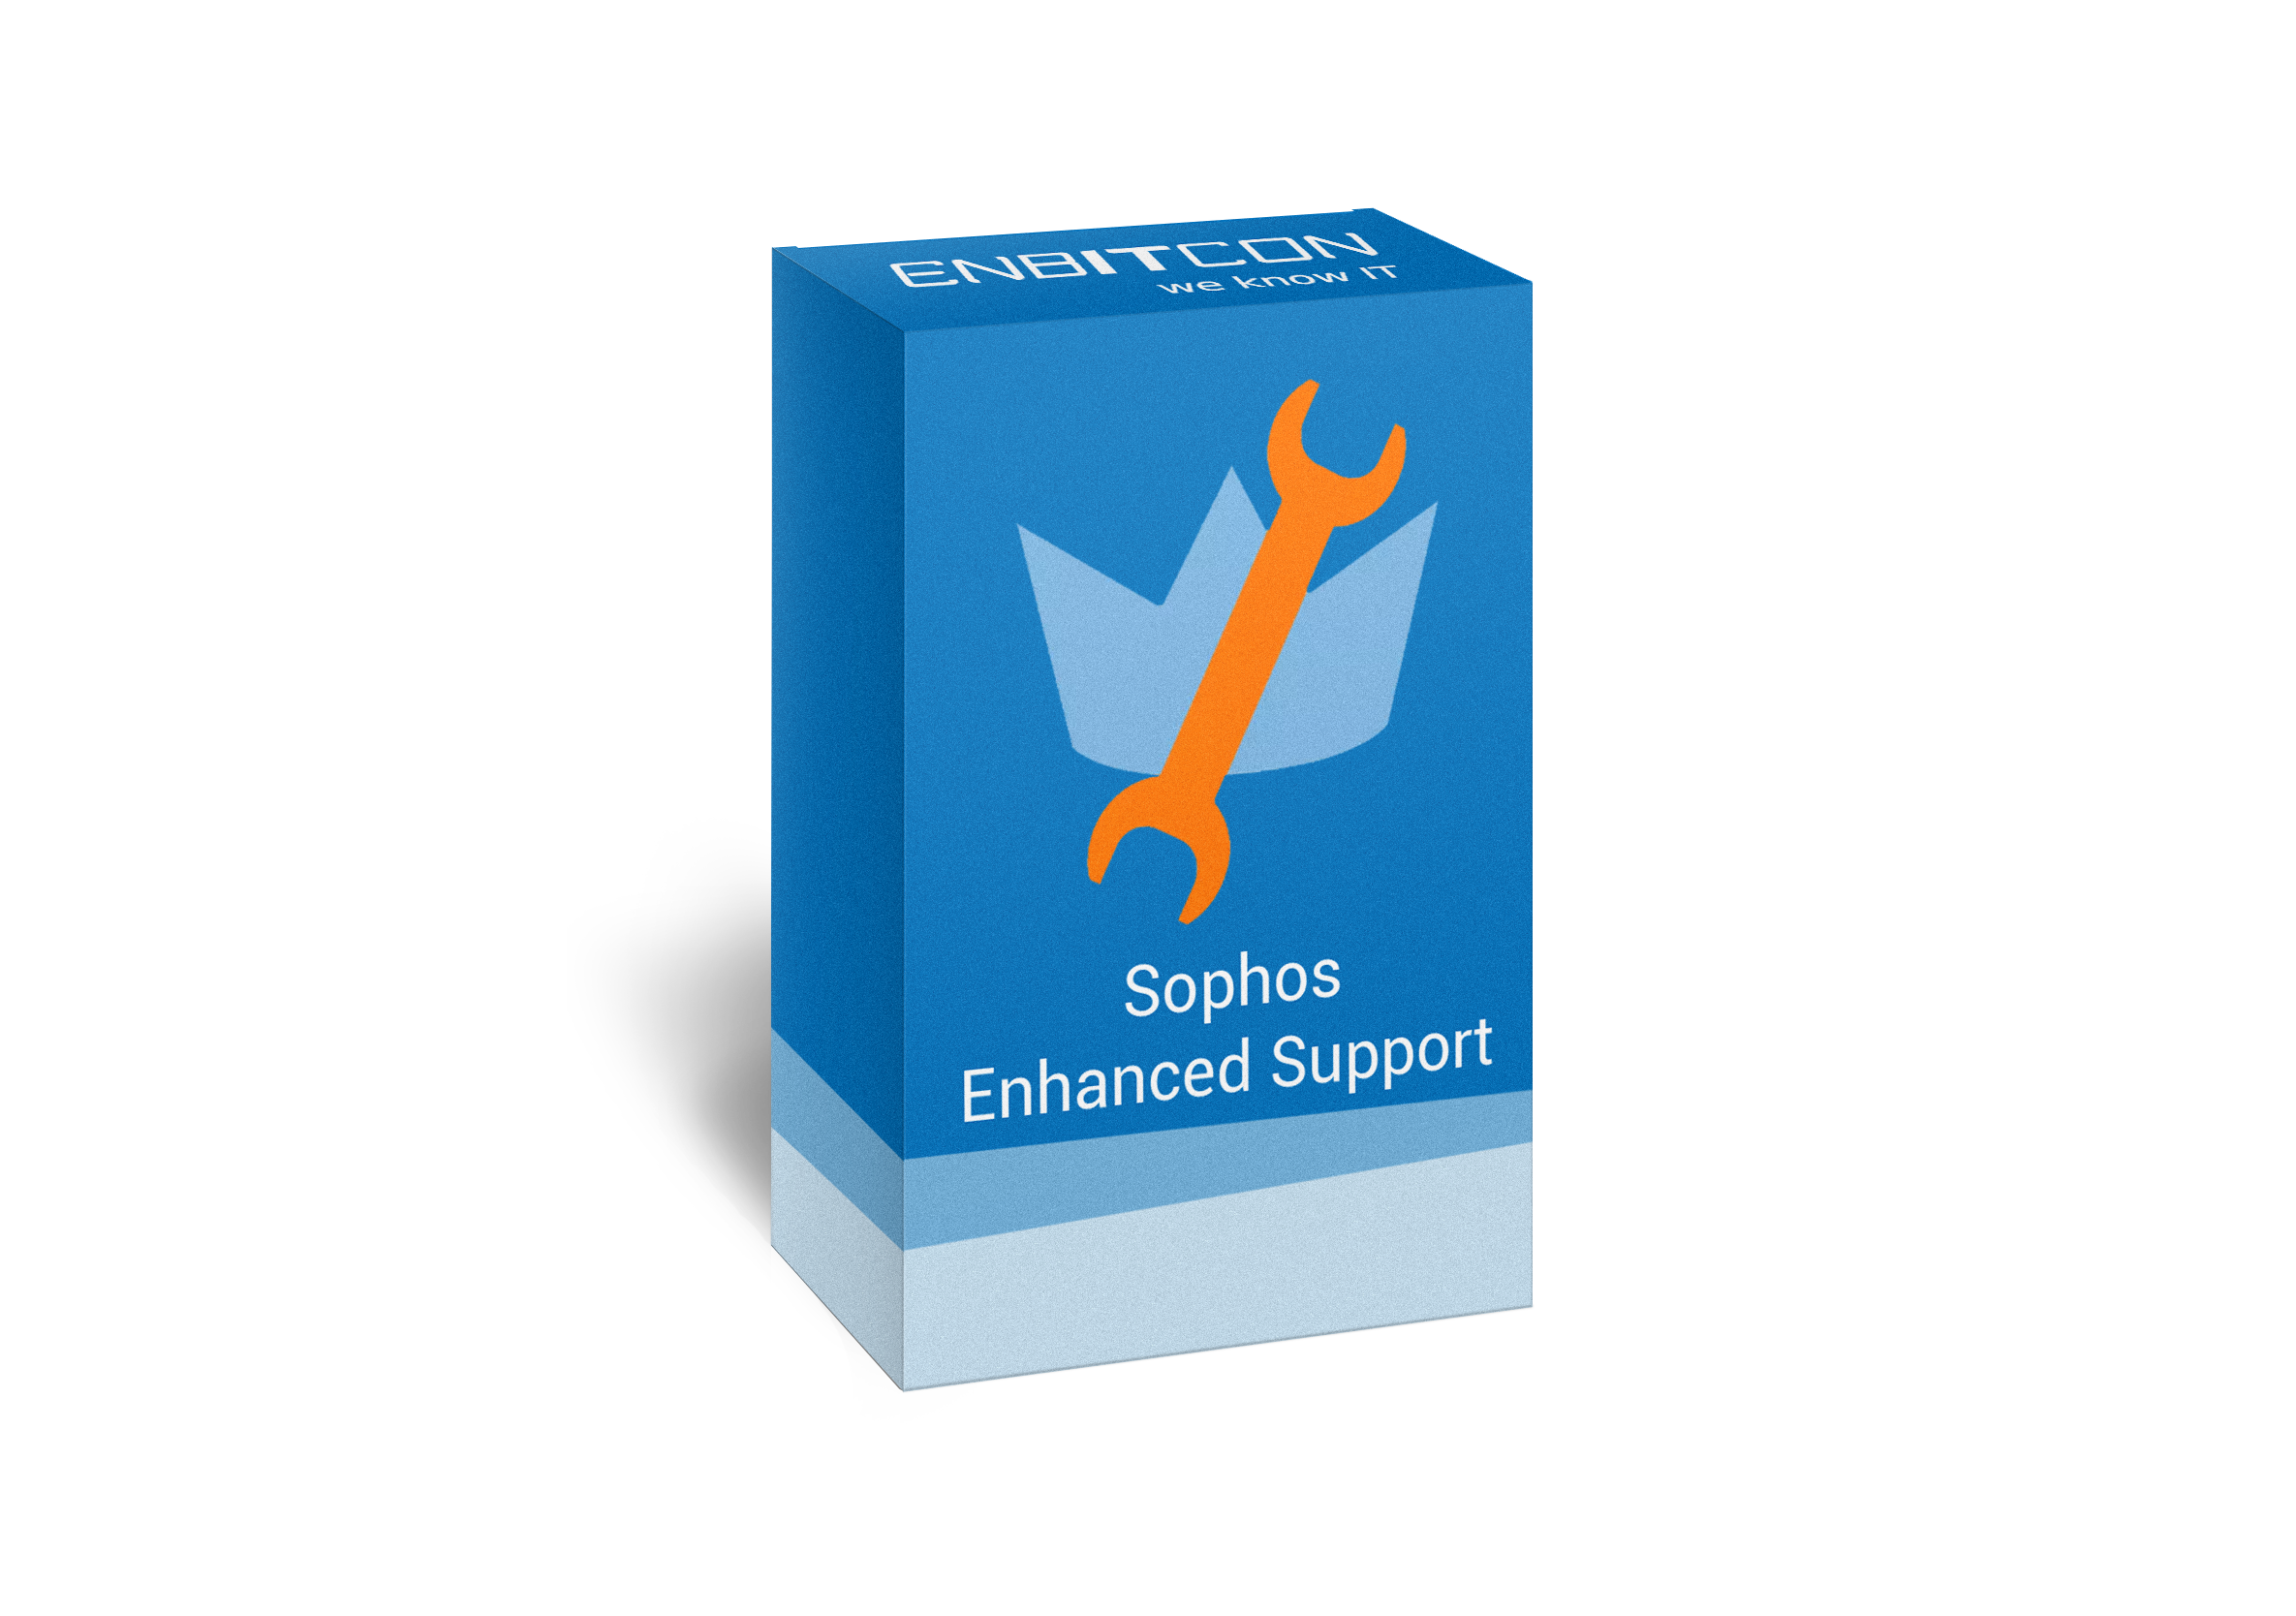 Sophos Enhanced Support Box Vorschaubild bestehend aus einem orangenem Schraubenschlüssel auf einer blauen Box